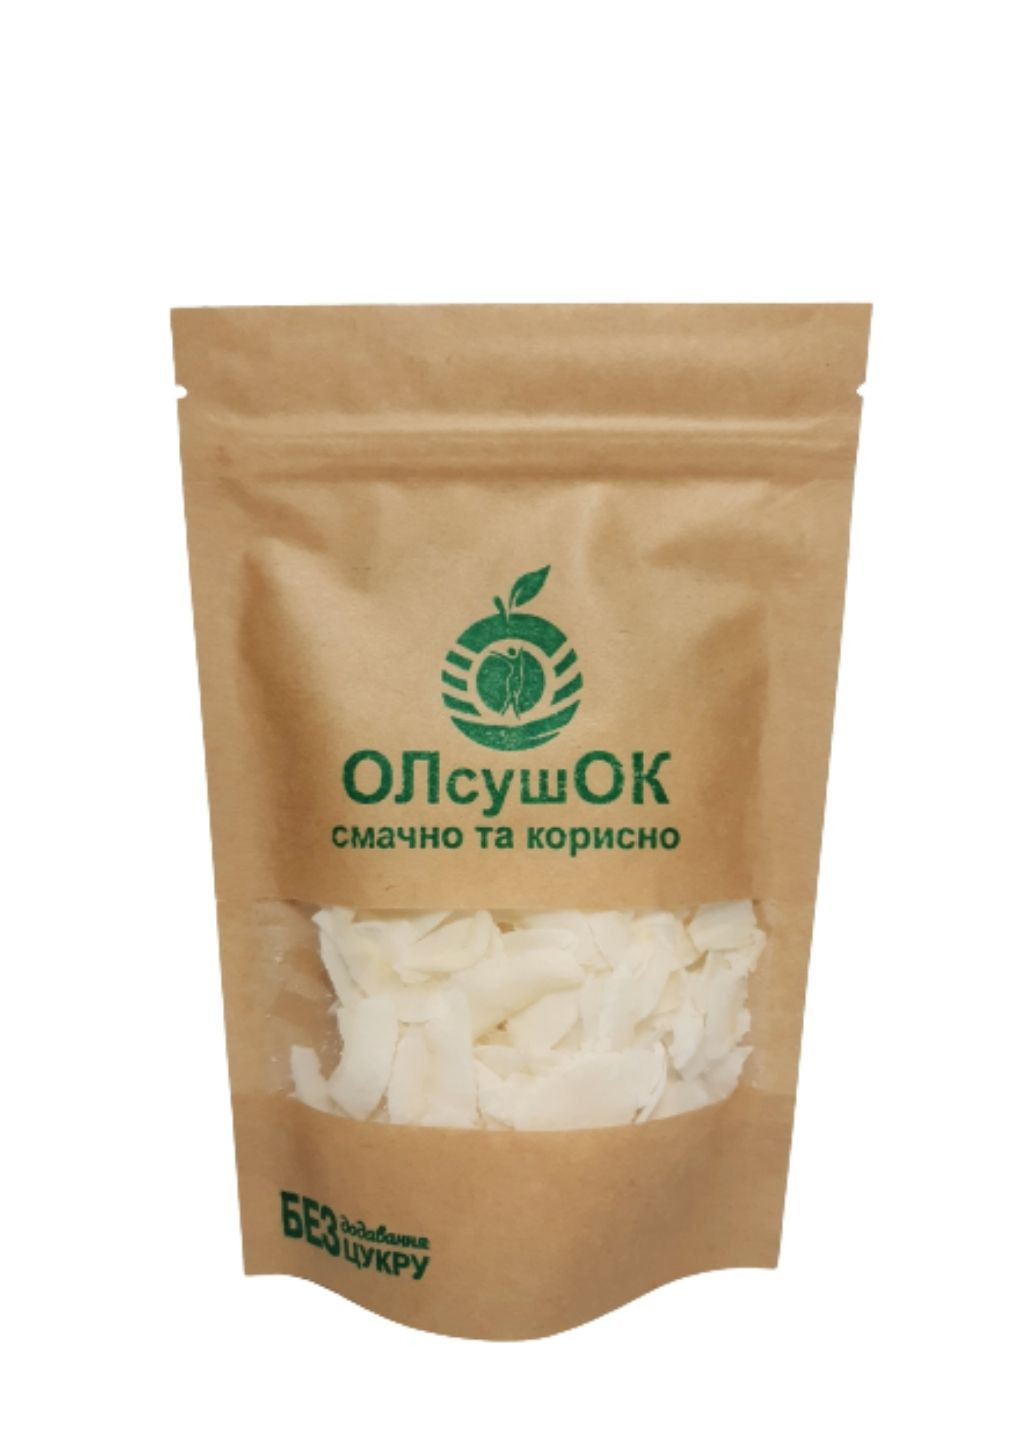 Кокосовые чипсы натуральные сушеные 50 г ОЛсушОК (222712779)